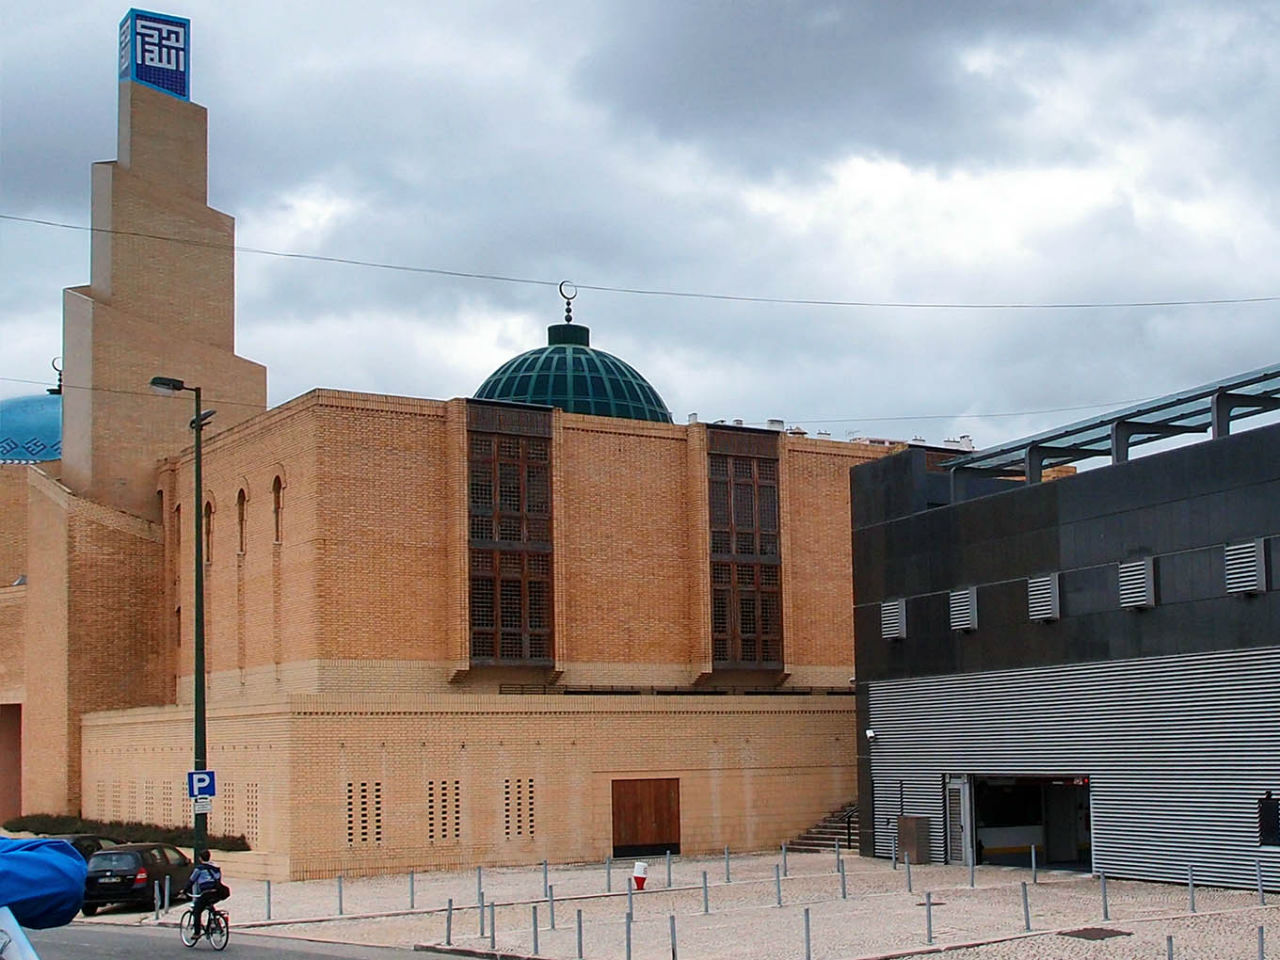 Центральная мечеть в Лиссабоне — современное здание с куполом и минаретом. Построена в 1985 году для мусульманской общины португальской столицы Лиссабон, Португалия